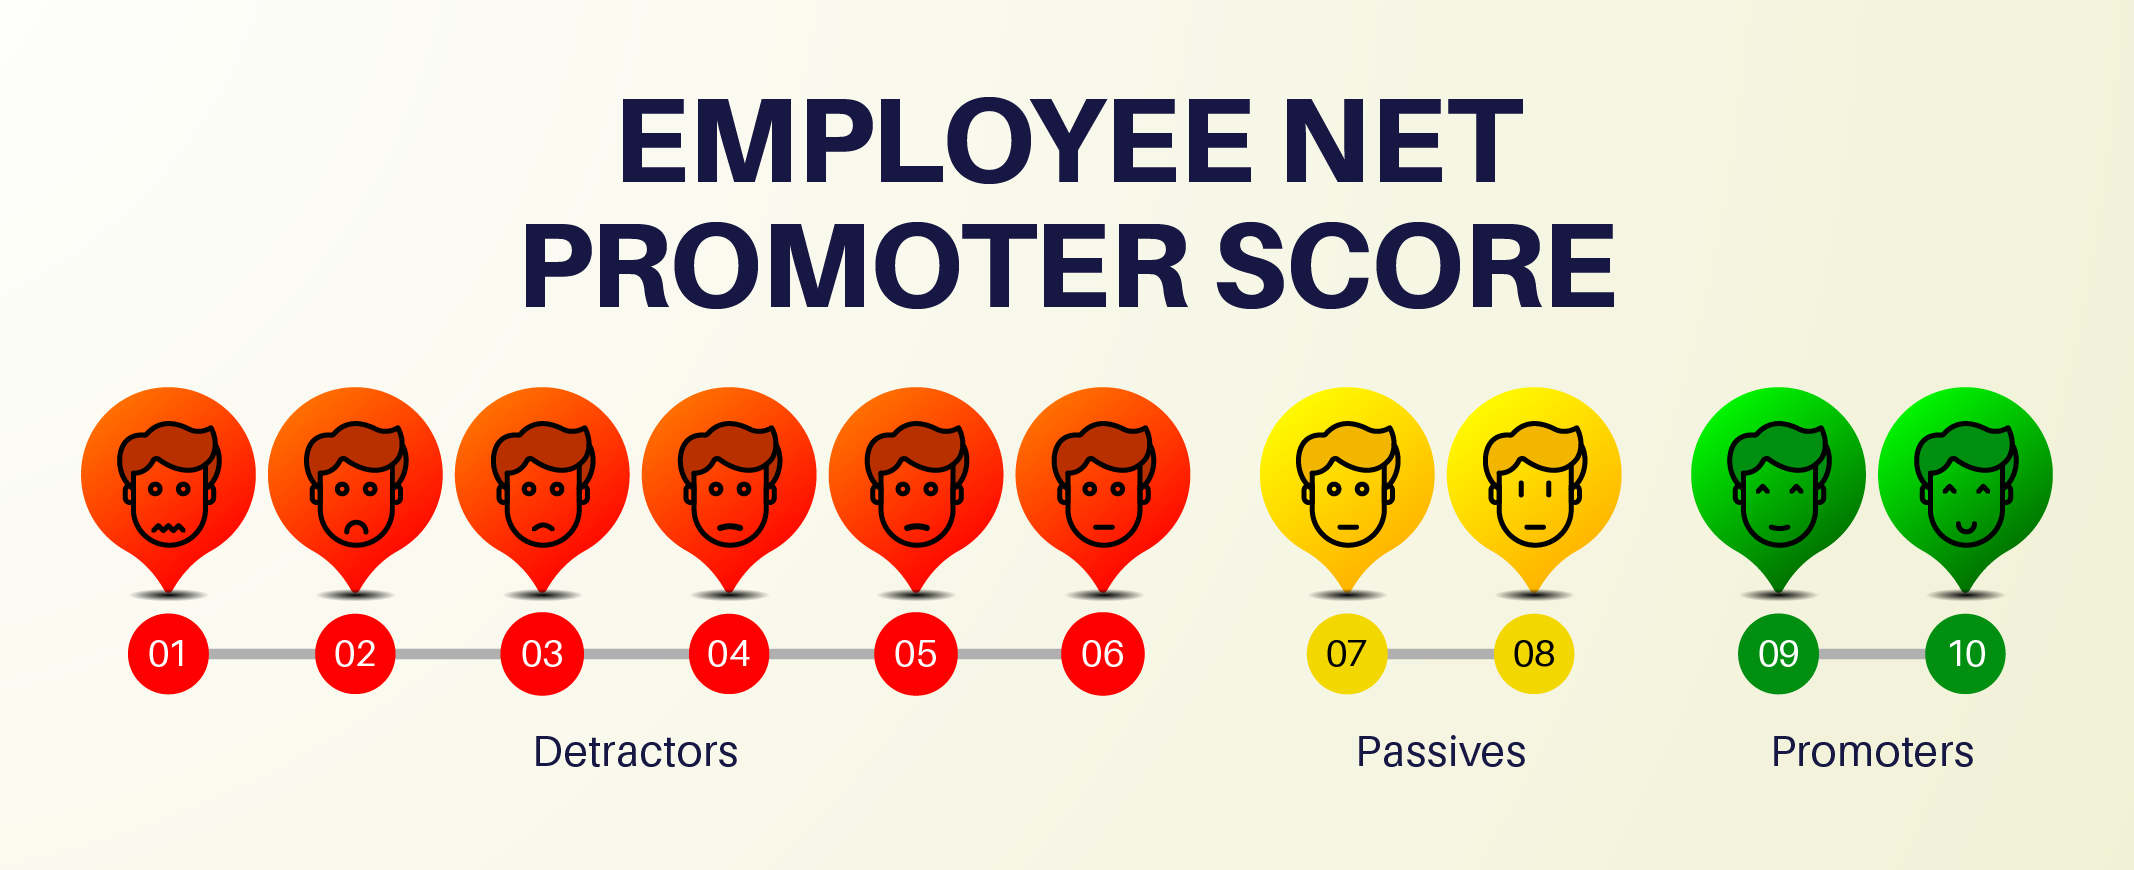 Employee Net Promoter Score (eNPS)